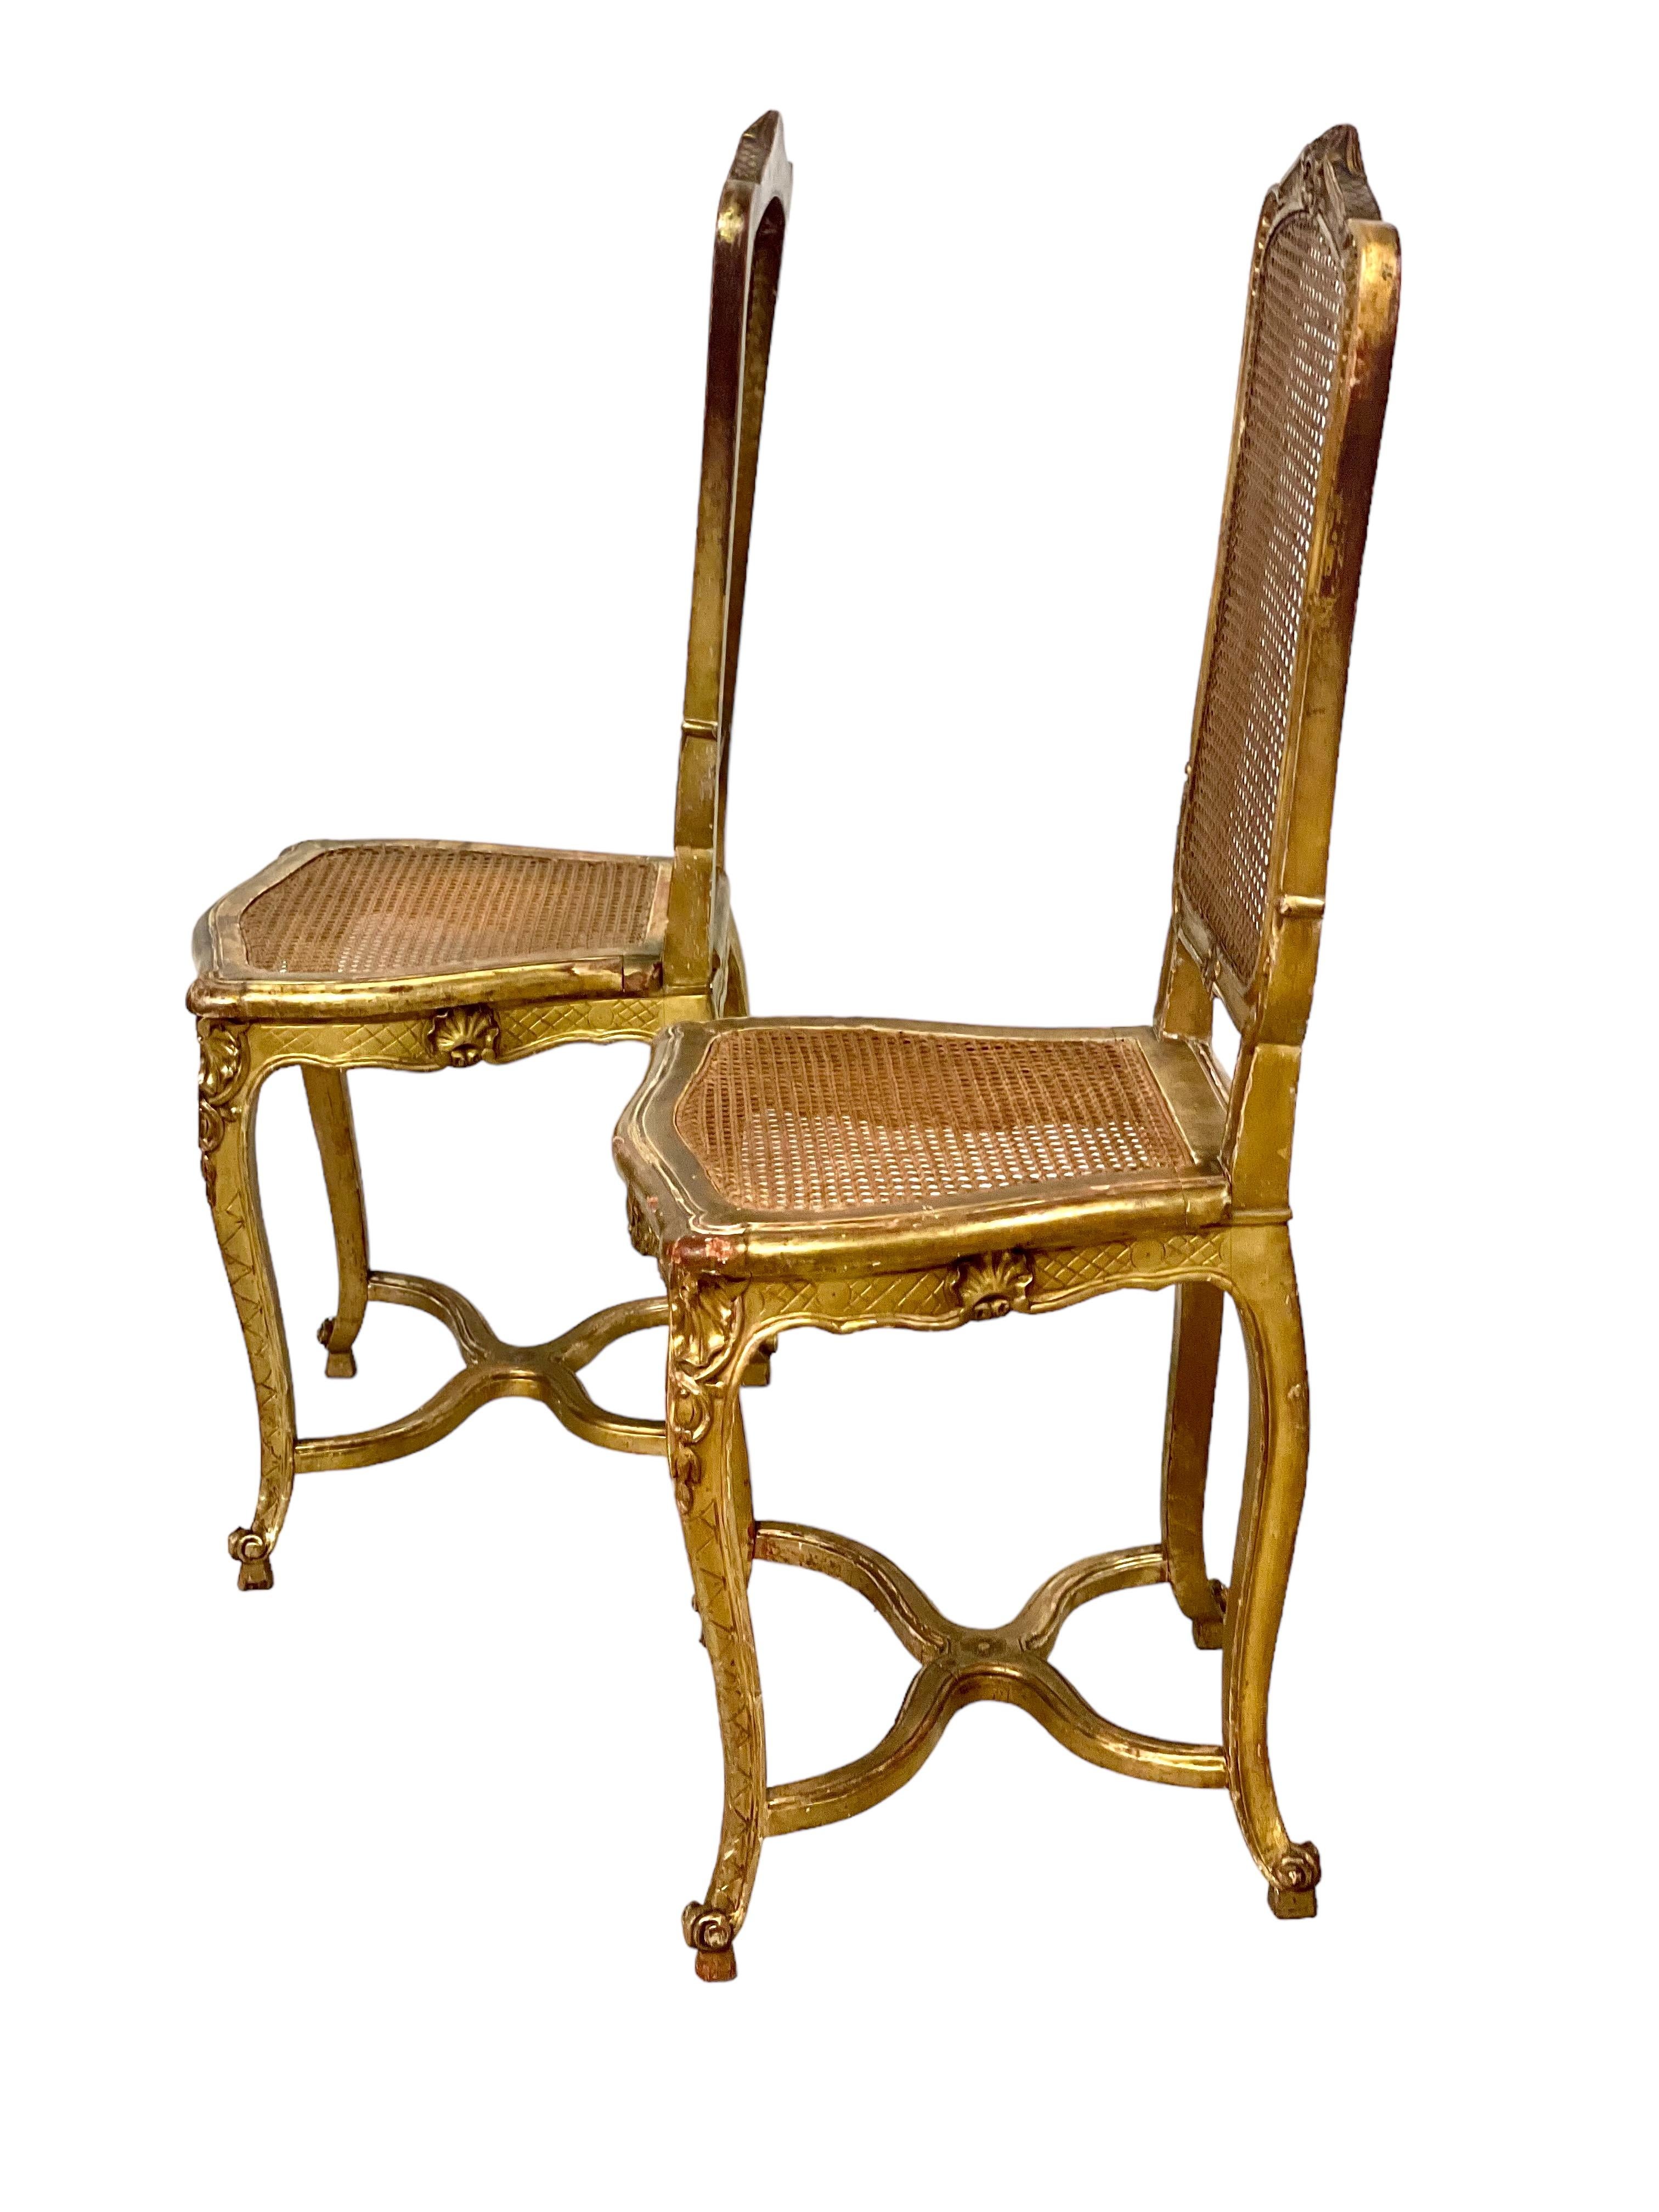 Ein reizendes Paar geschnitzter und geformter Vergoldungsstühle aus dem späten 19. Jahrhundert, mit geschnitzten Sitzen und Rückenlehnen. Diese eleganten Stühle mit ihren hohen, kartuschenförmigen Rückenlehnen stehen auf Cabriole-Beinen, die durch